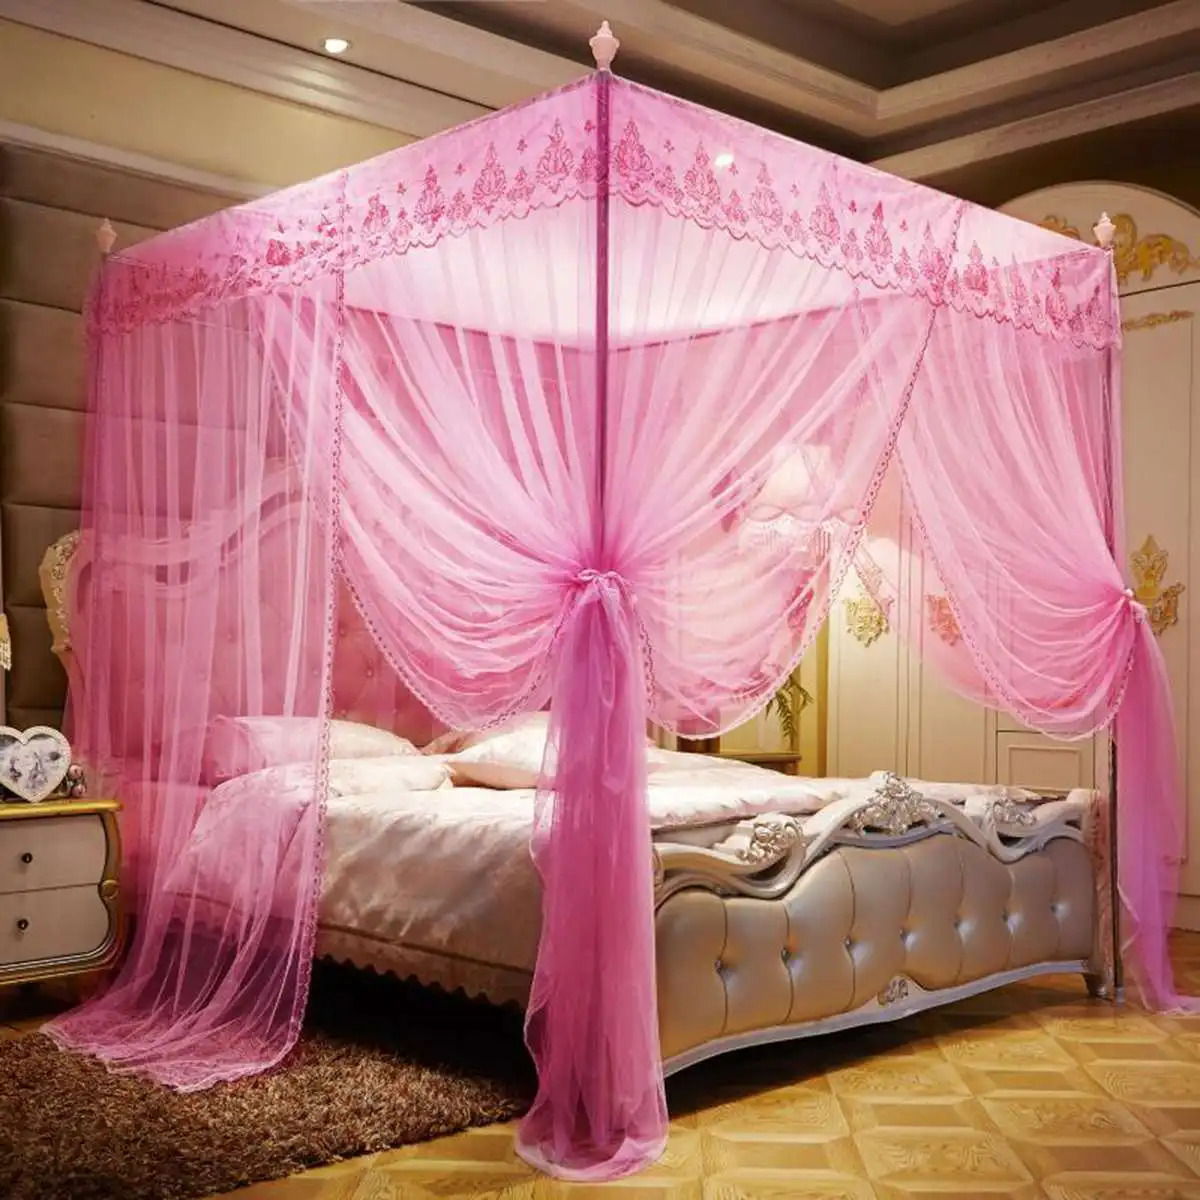 Дома москитная сетка для двойной балдахины для кровати взрослых три дверная противомоскитная сетка летняя кроватка Навес плюс размер - Цвет: Розовый